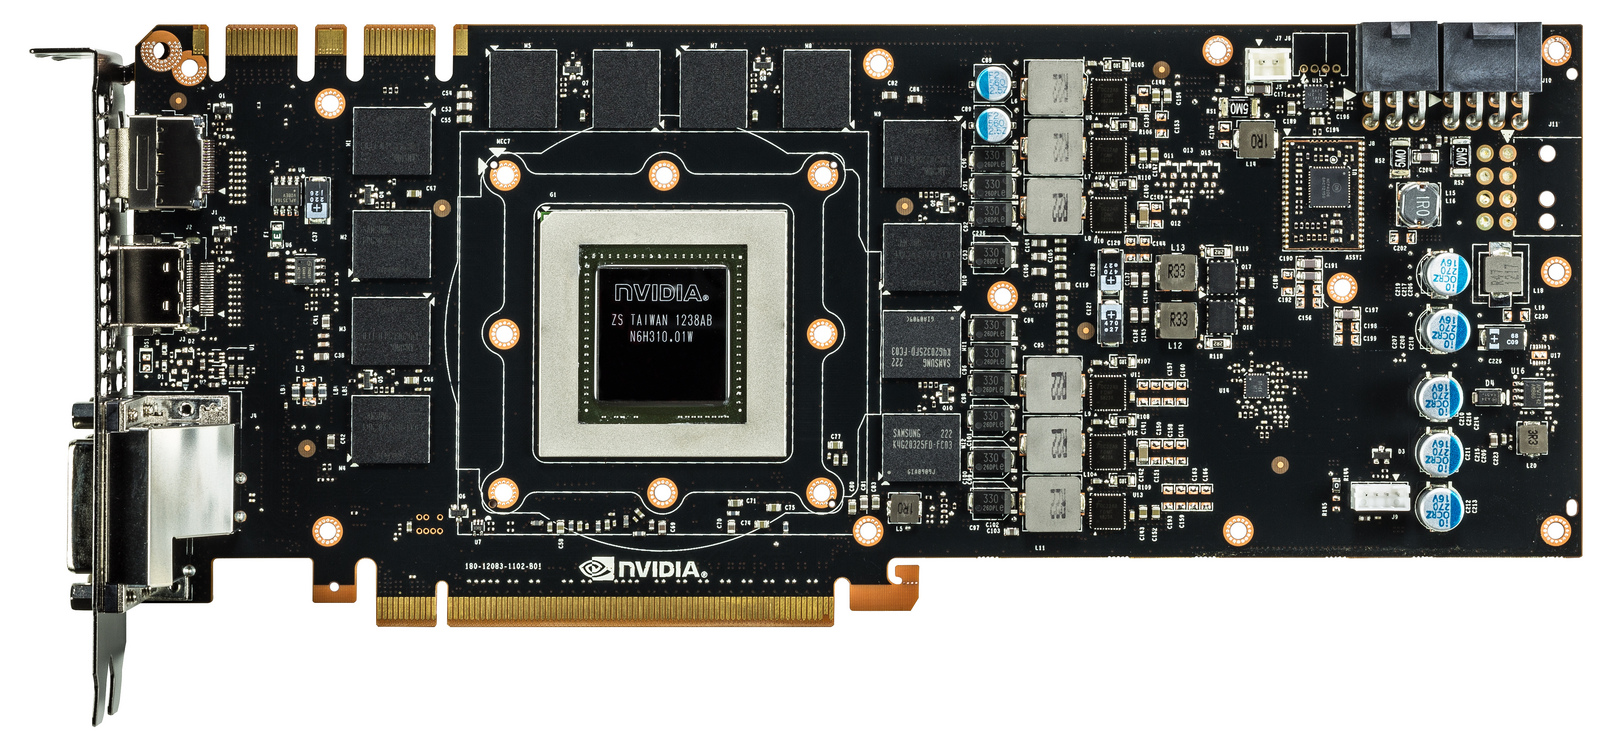 Immagine pubblicata in relazione al seguente contenuto: NVIDIA annuncia la video card high-end GeForce GTX 780 | Nome immagine: news19574_NVIDIA-GeForce-GTX-780_4.jpg